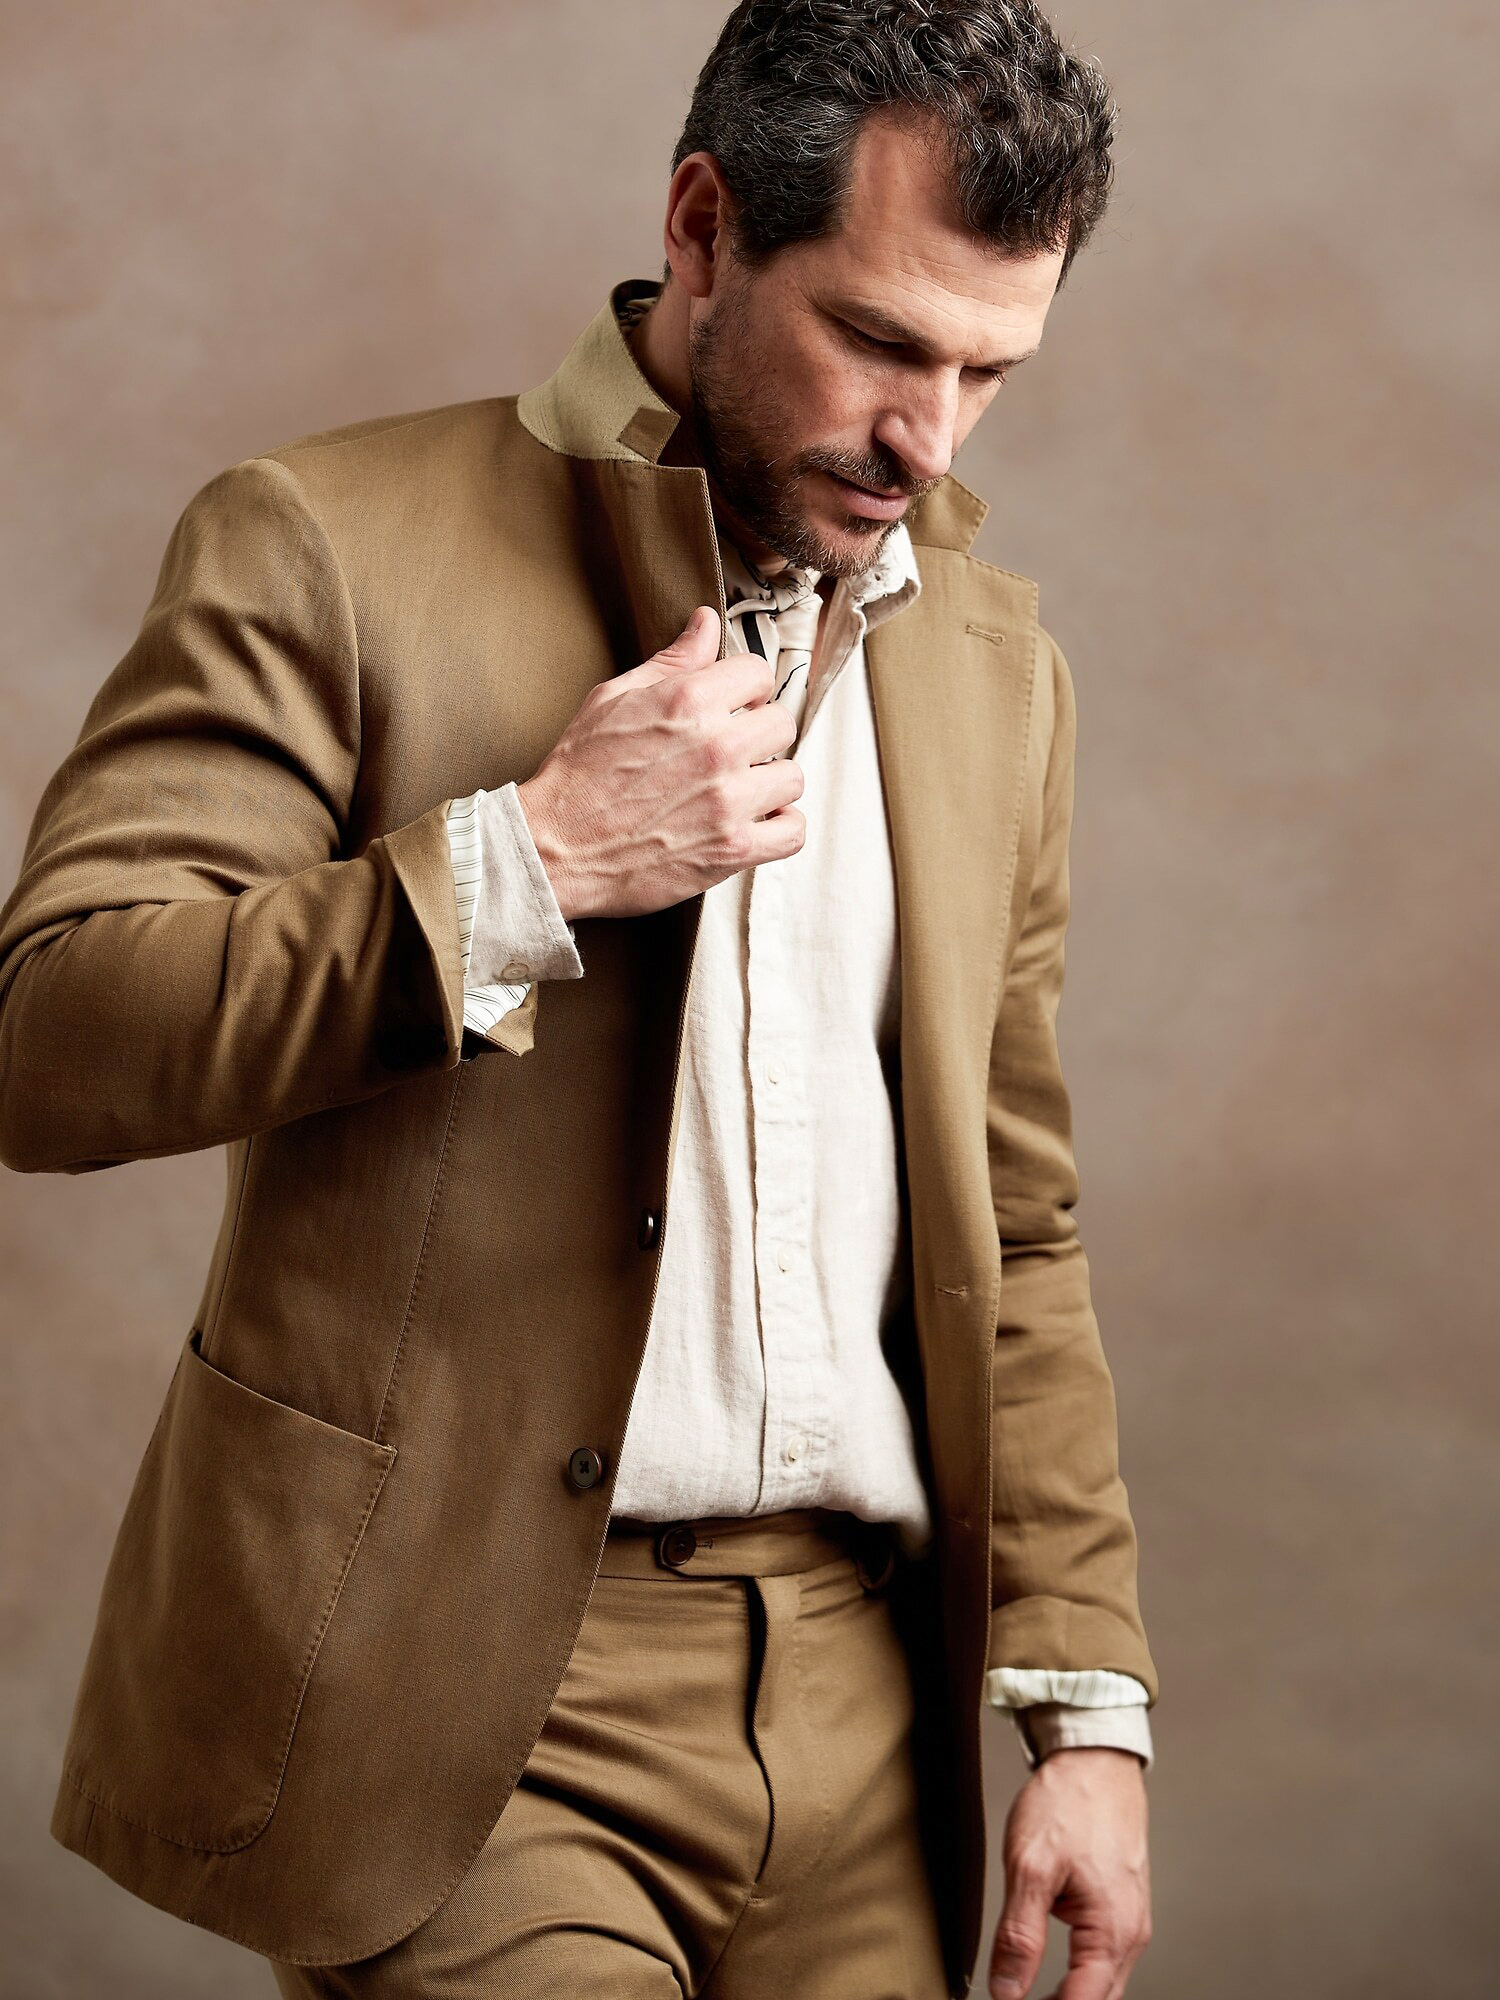 Tan cotton/linen blend suit for summer